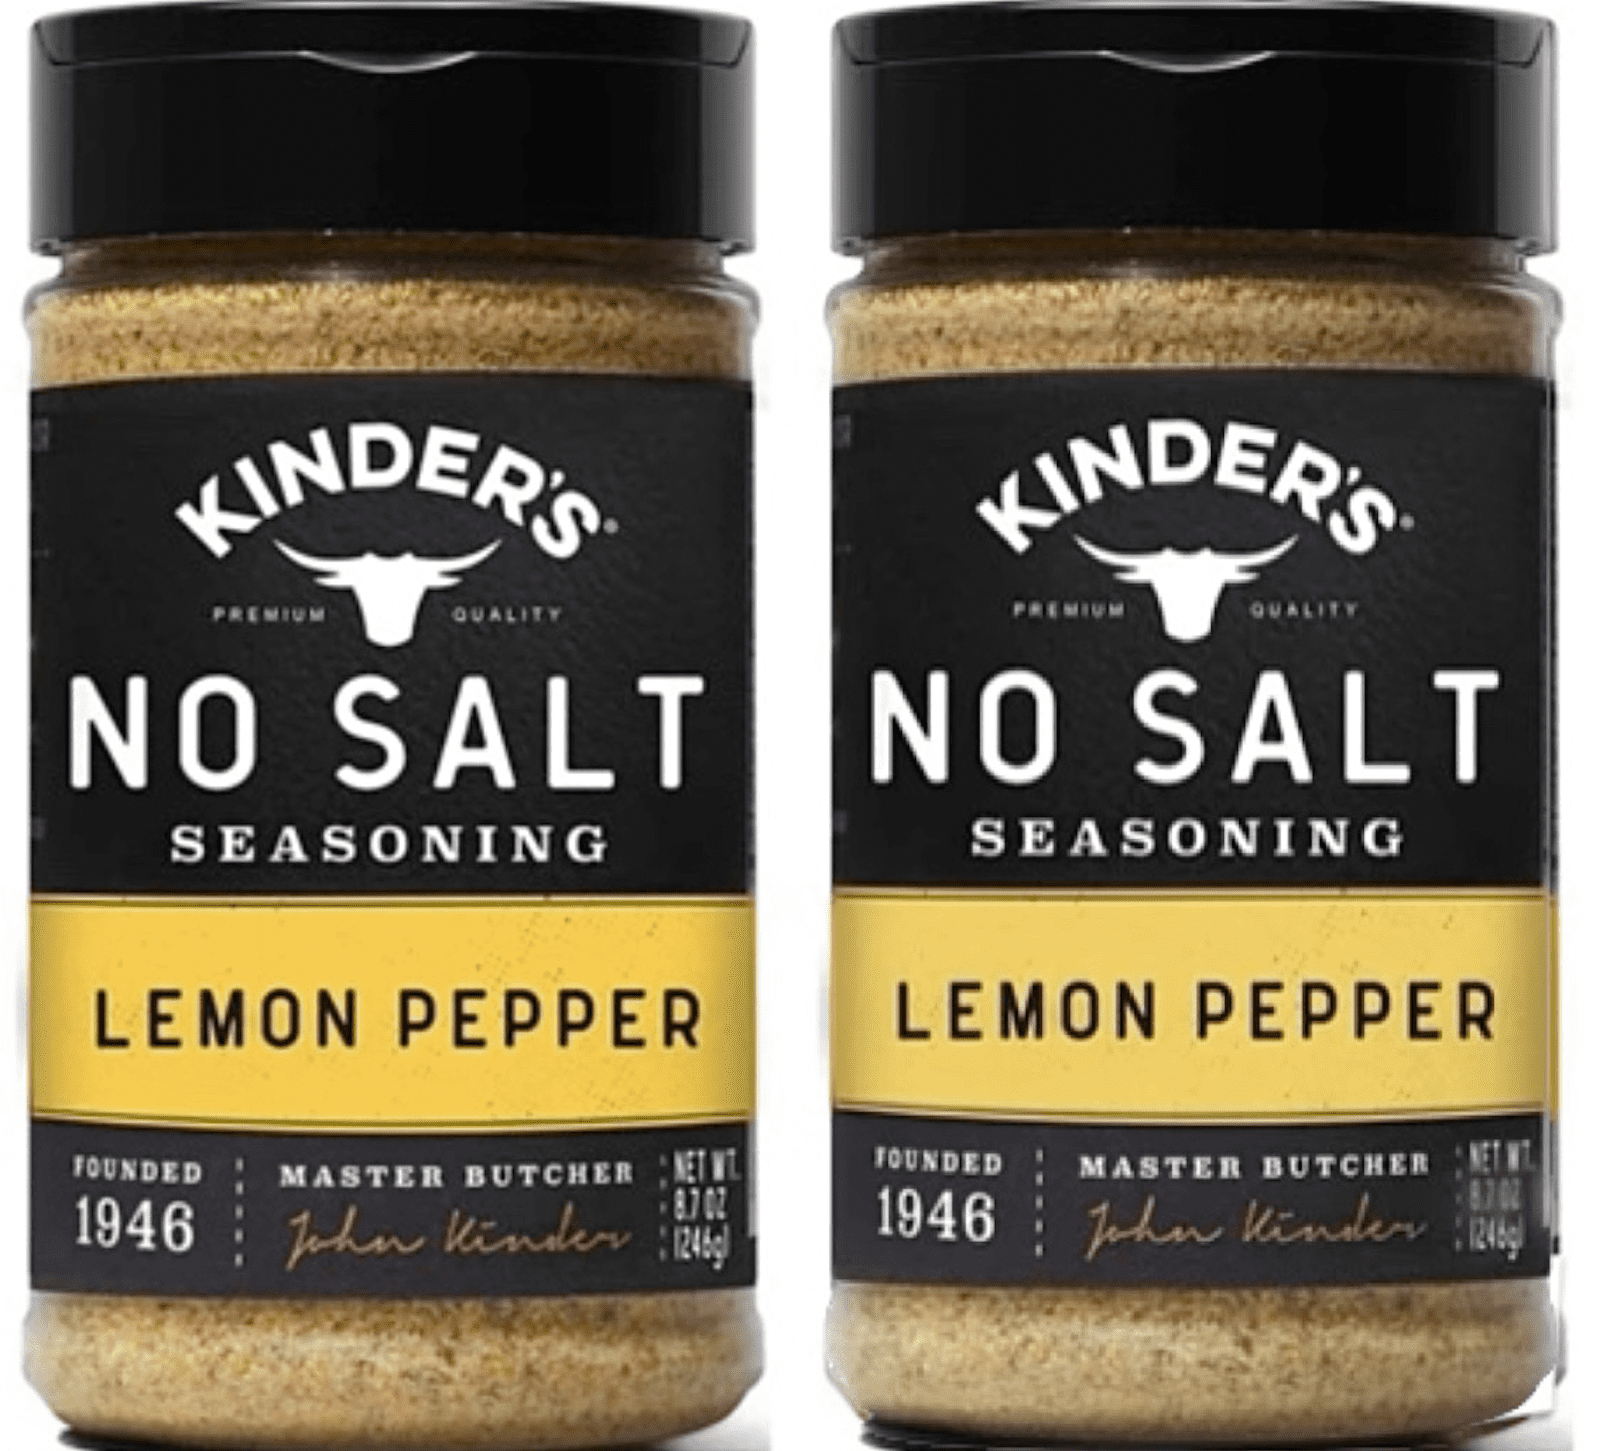 Kinders Seasoning No Salt Lemon Pepper (11.8oz.) is Gluten Free